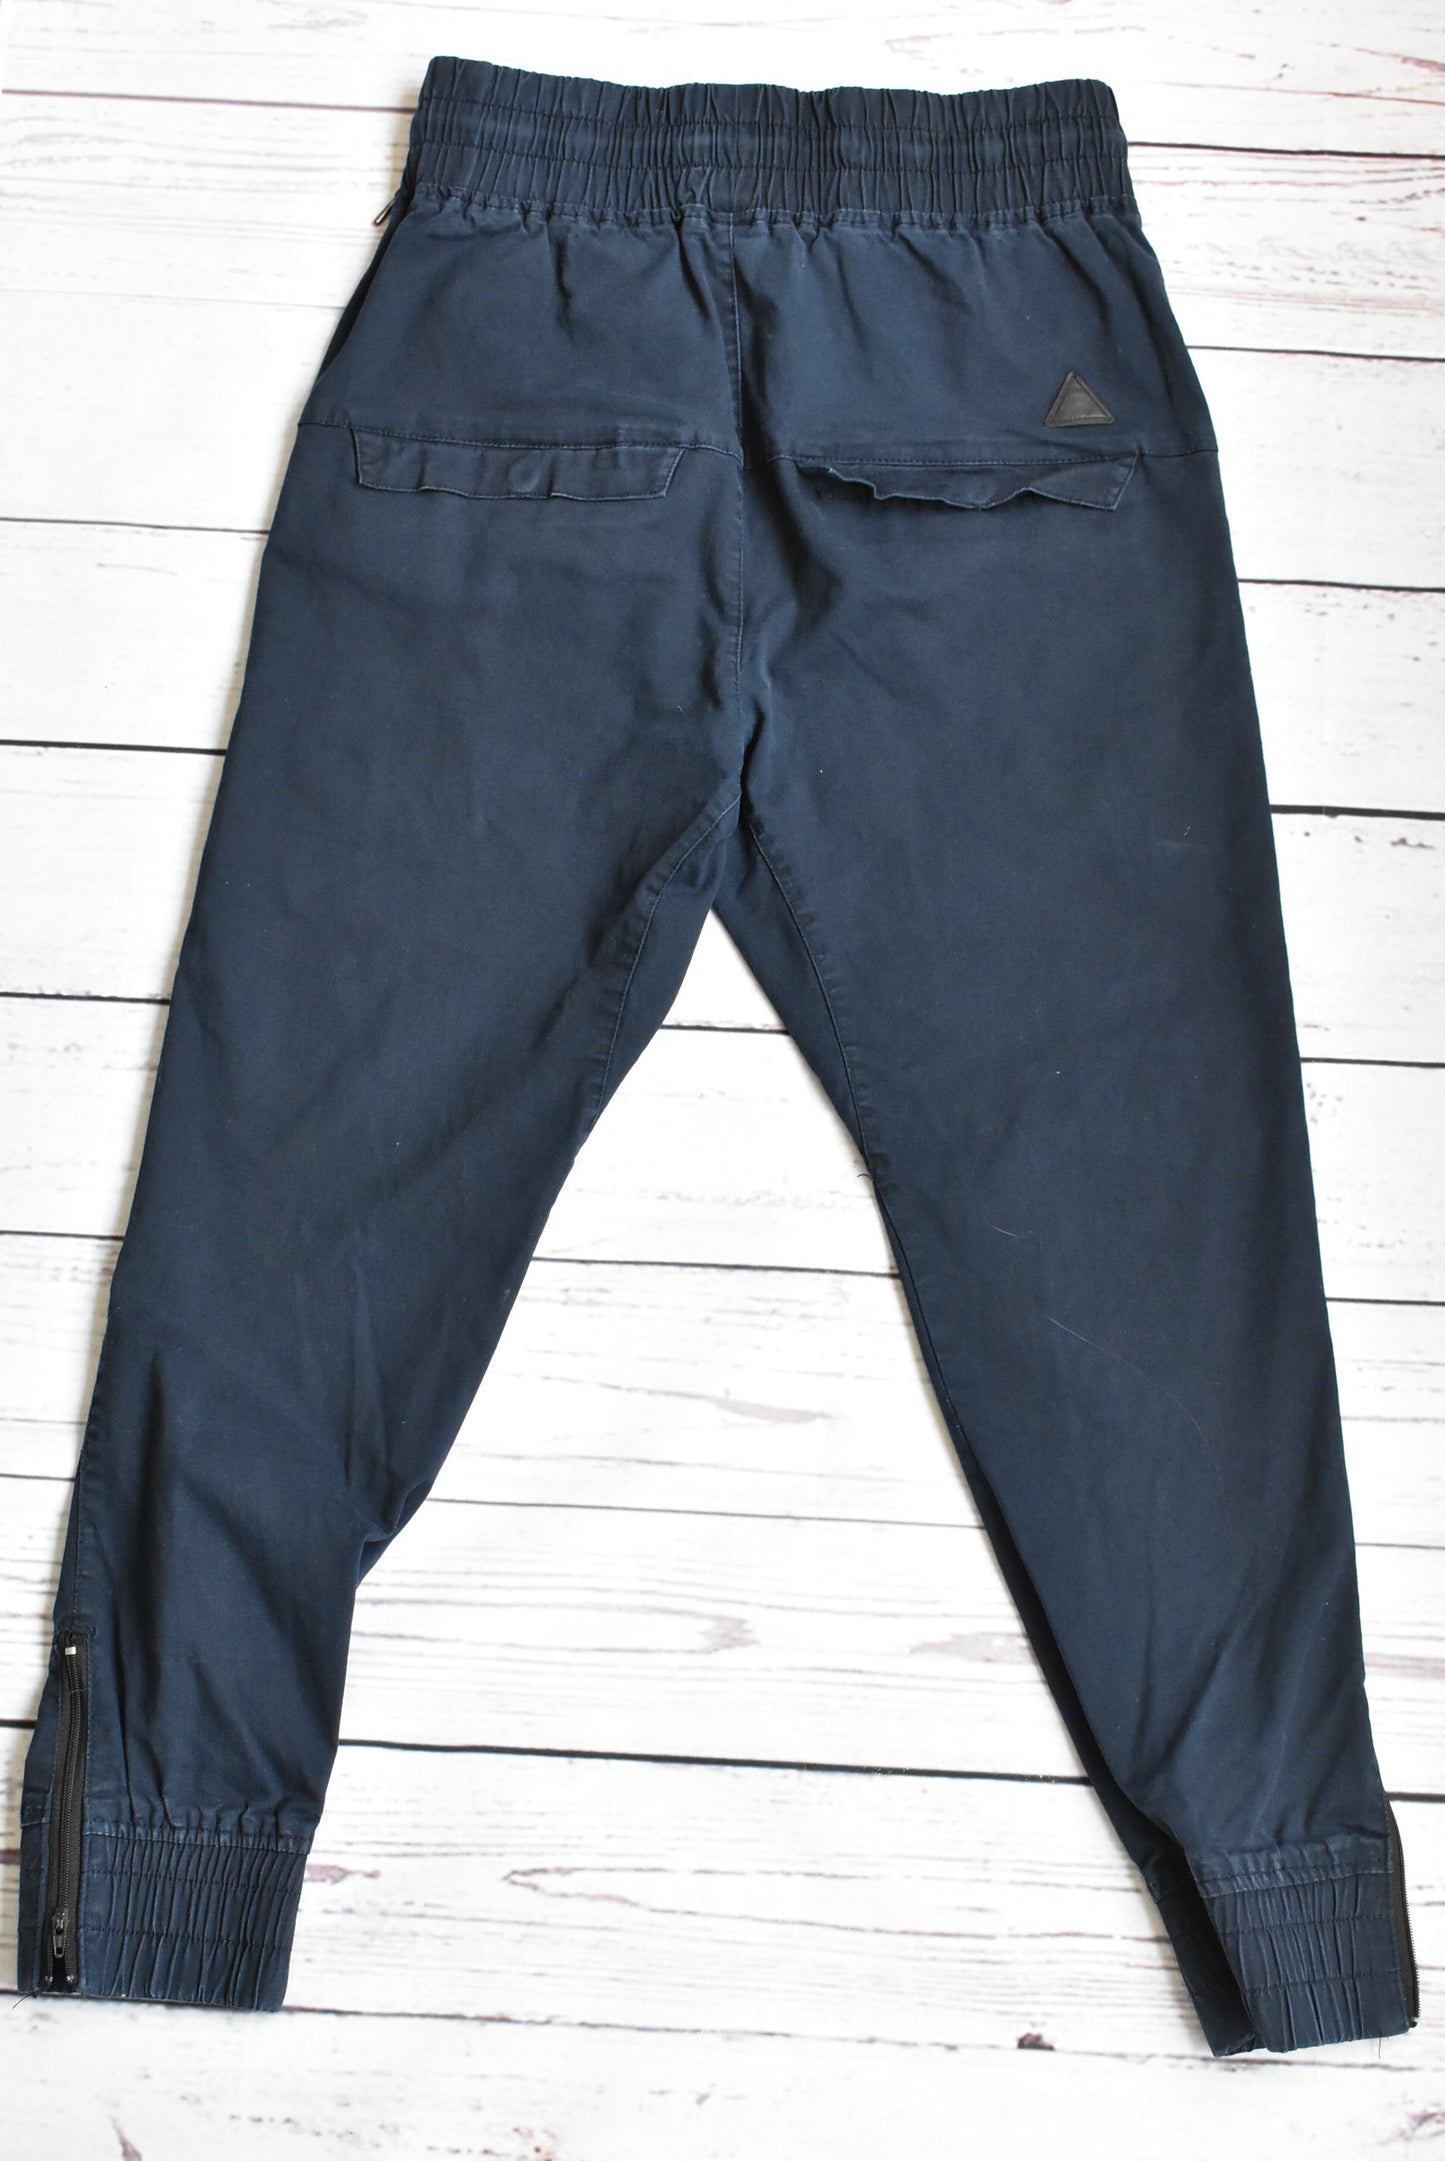 Park blue denim 'sweatpants', size 32